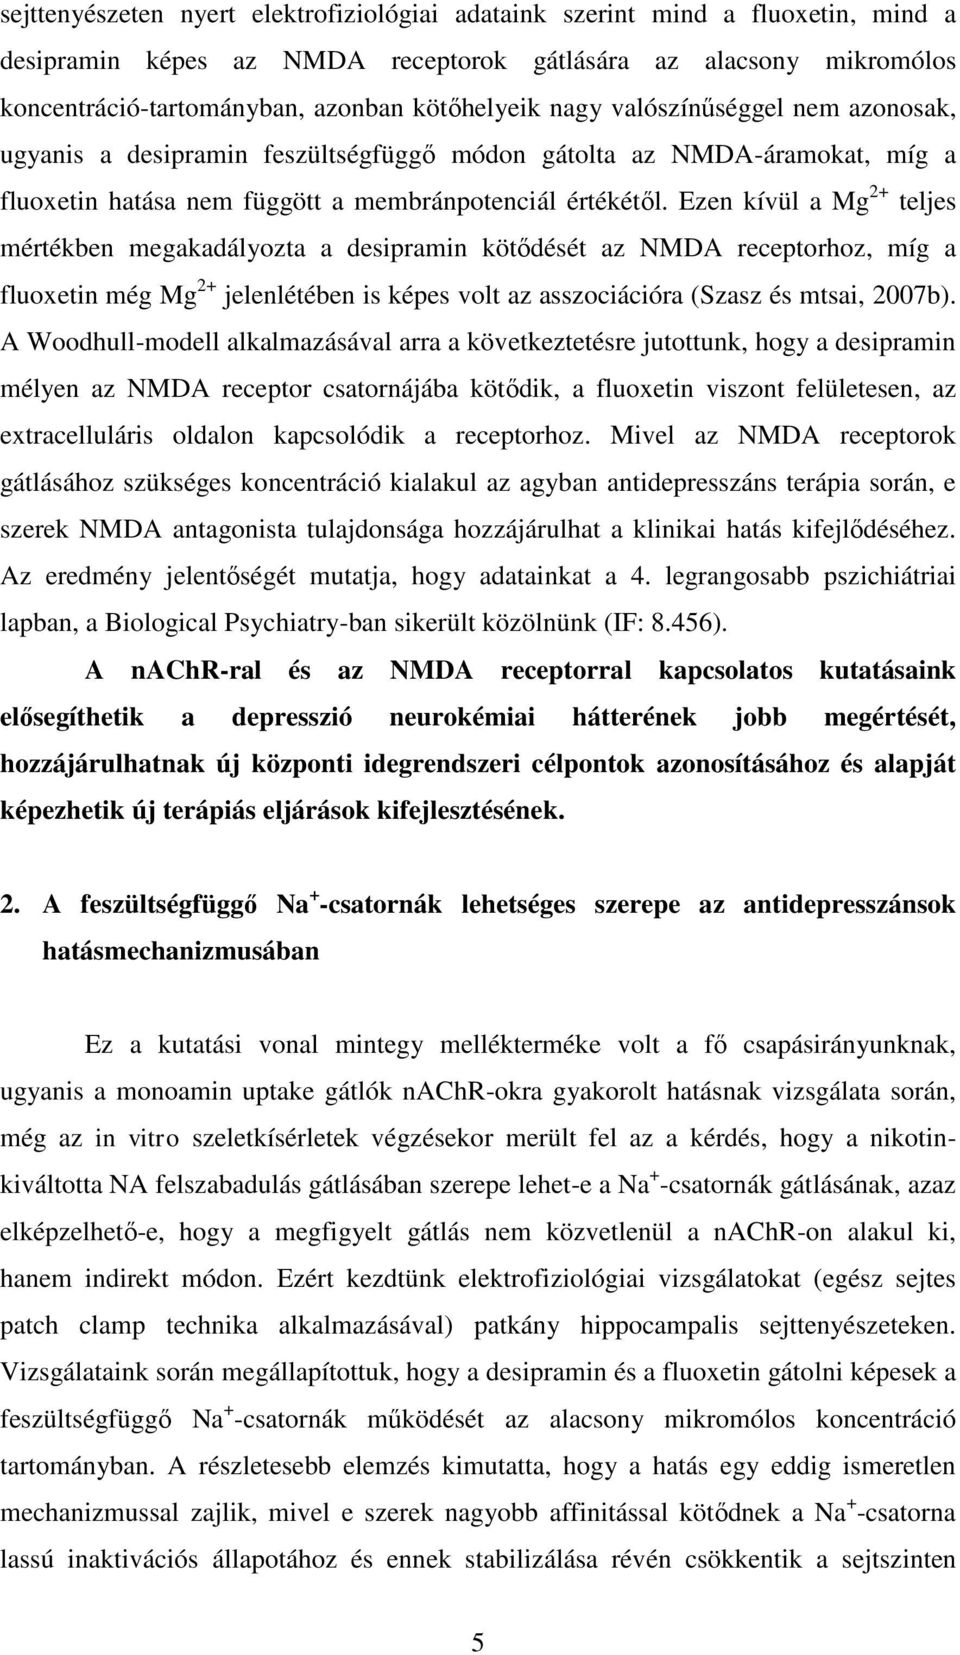 Ezen kívül a Mg 2+ teljes mértékben megakadályozta a desipramin kötődését az NMDA receptorhoz, míg a fluoxetin még Mg 2+ jelenlétében is képes volt az asszociációra (Szasz és mtsai, 2007b).